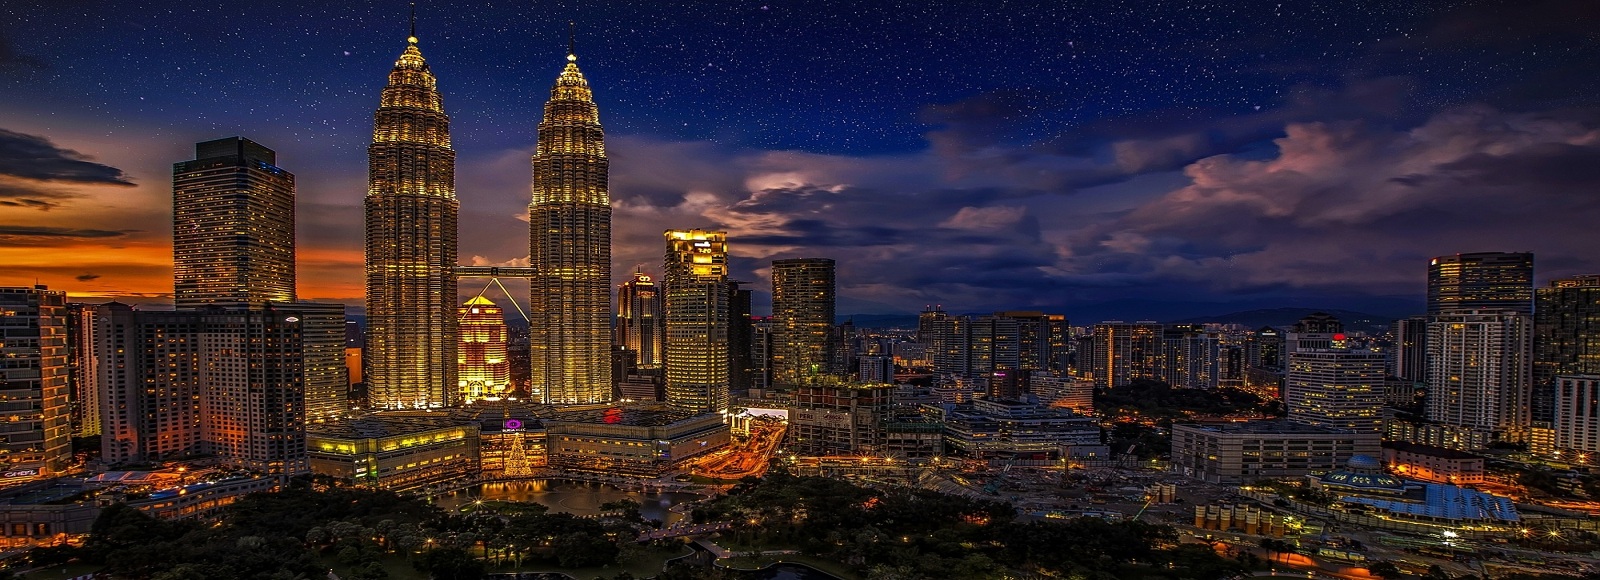 Ofertas de Traslados en Malasia. Traslados económicos en Malasia 